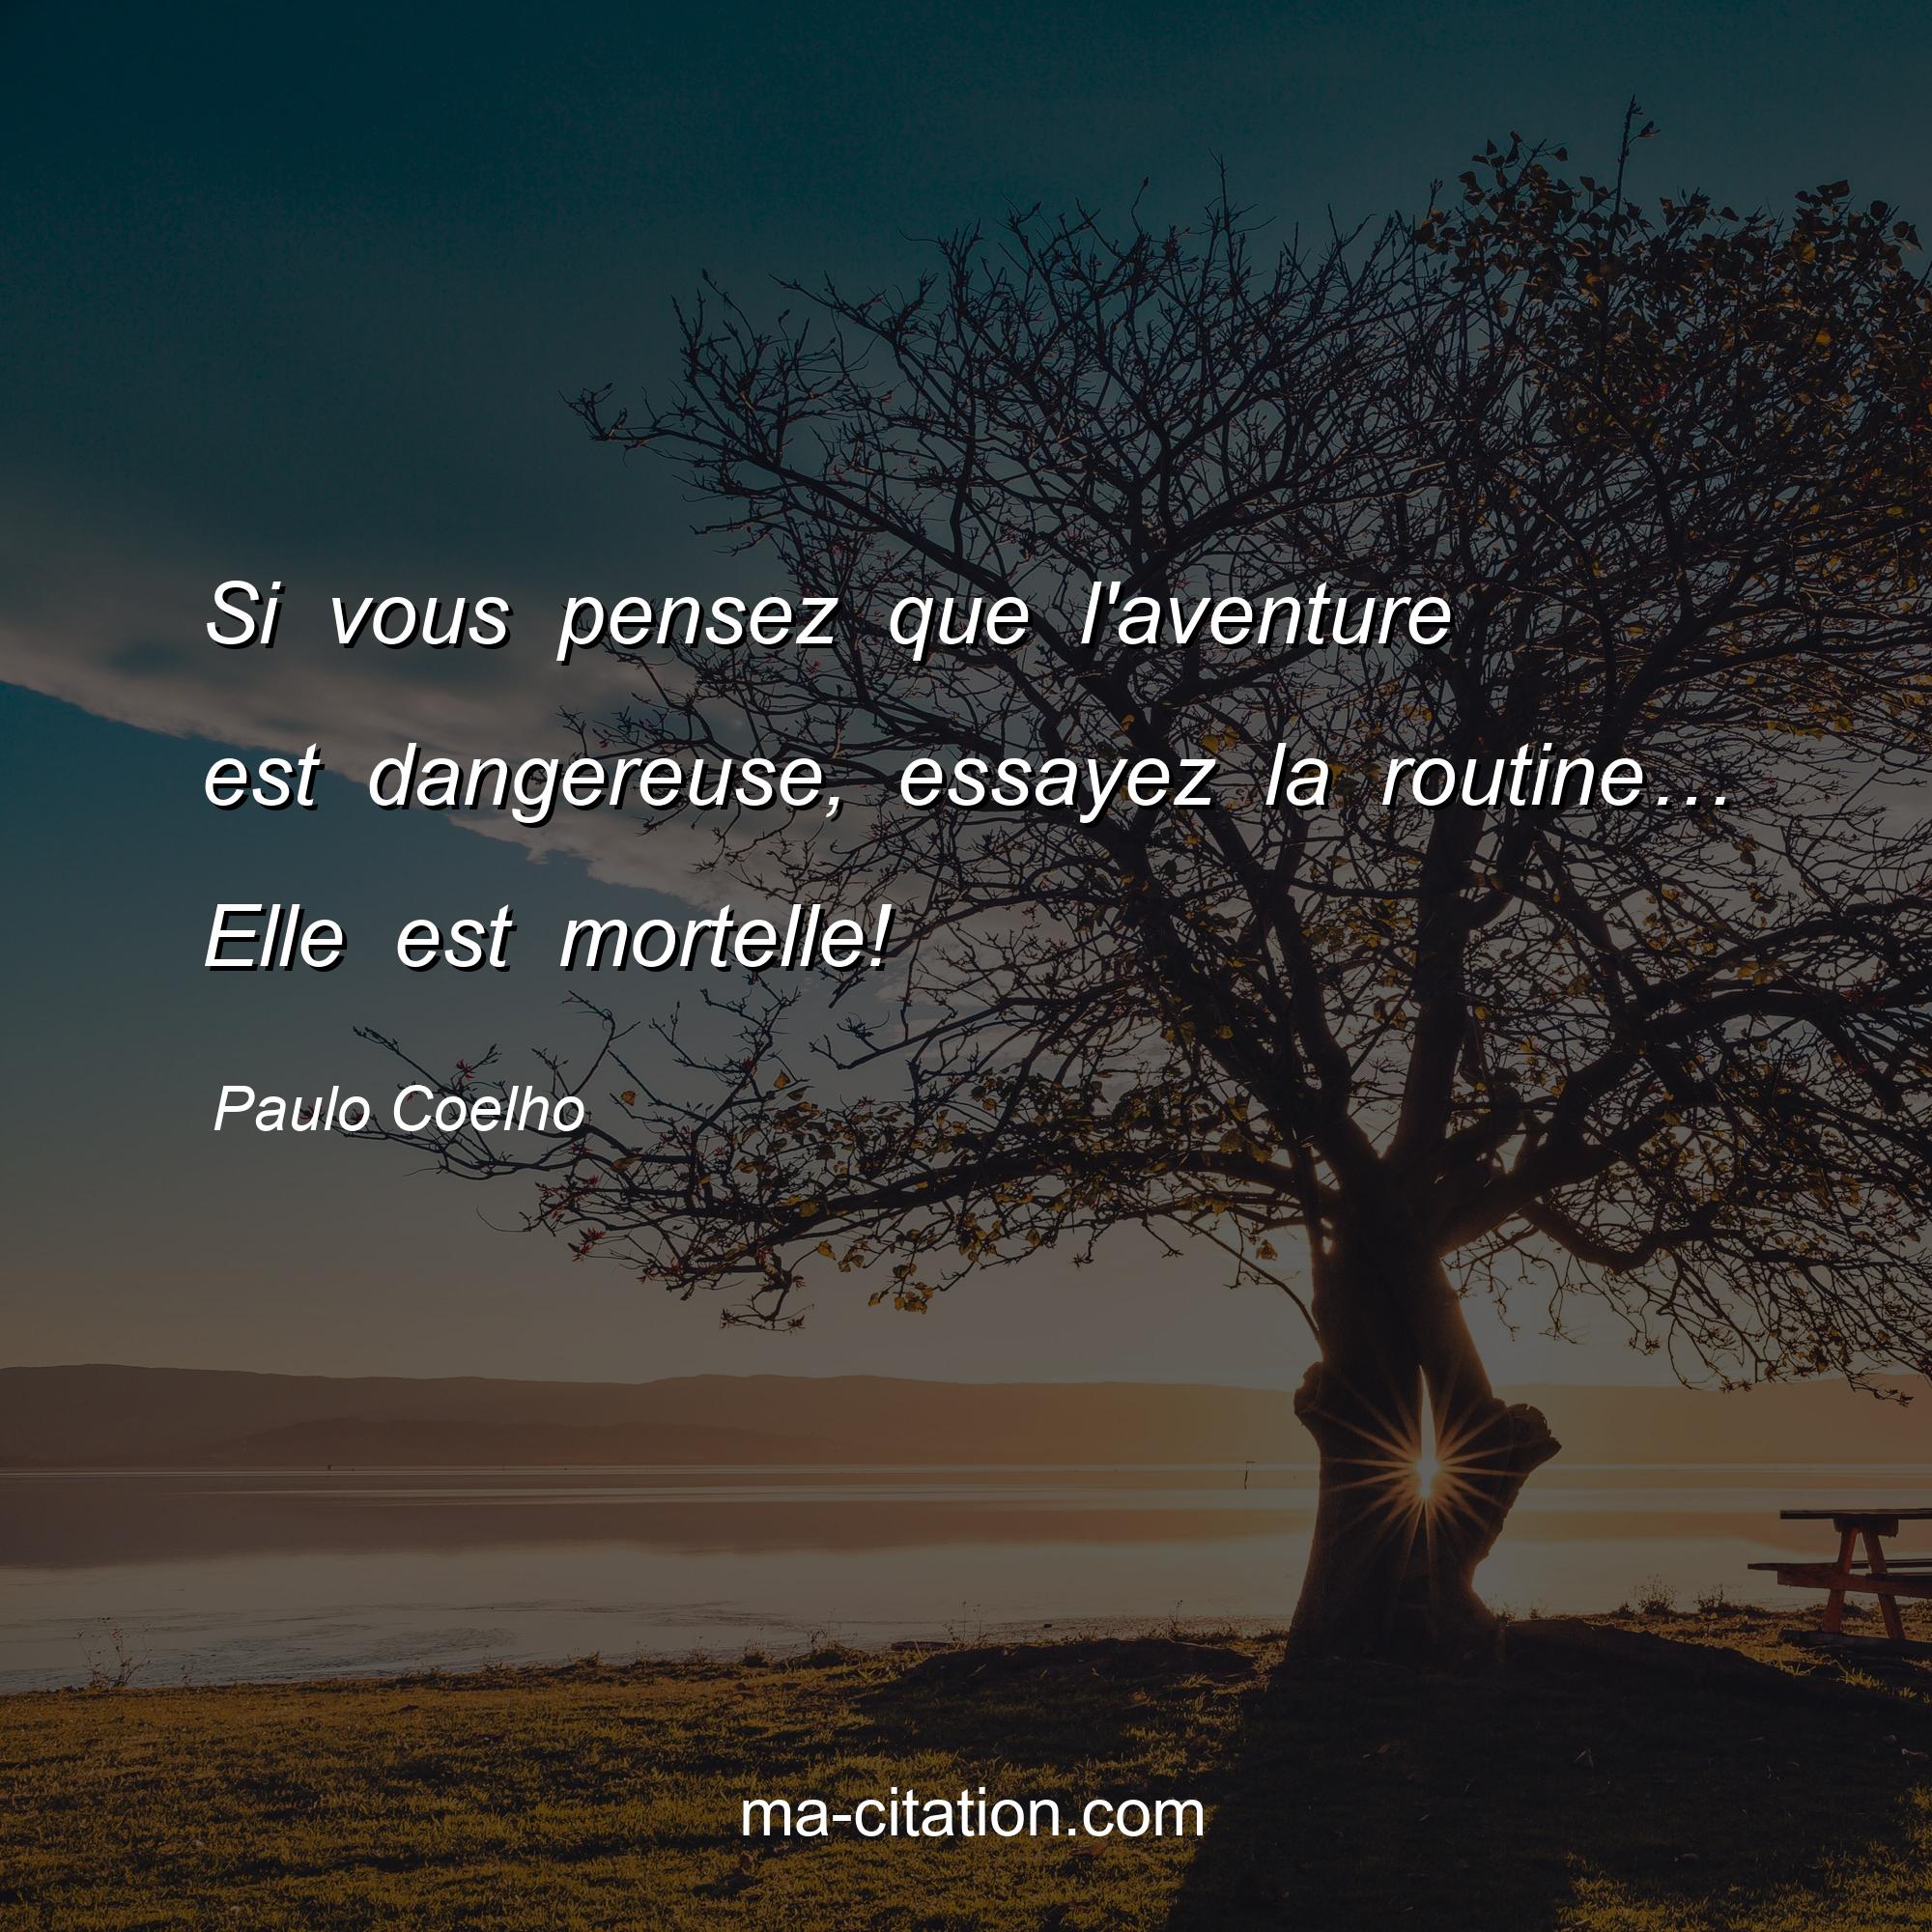 Paulo Coelho : Si vous pensez que l'aventure est dangereuse, essayez la routine… Elle est mortelle!